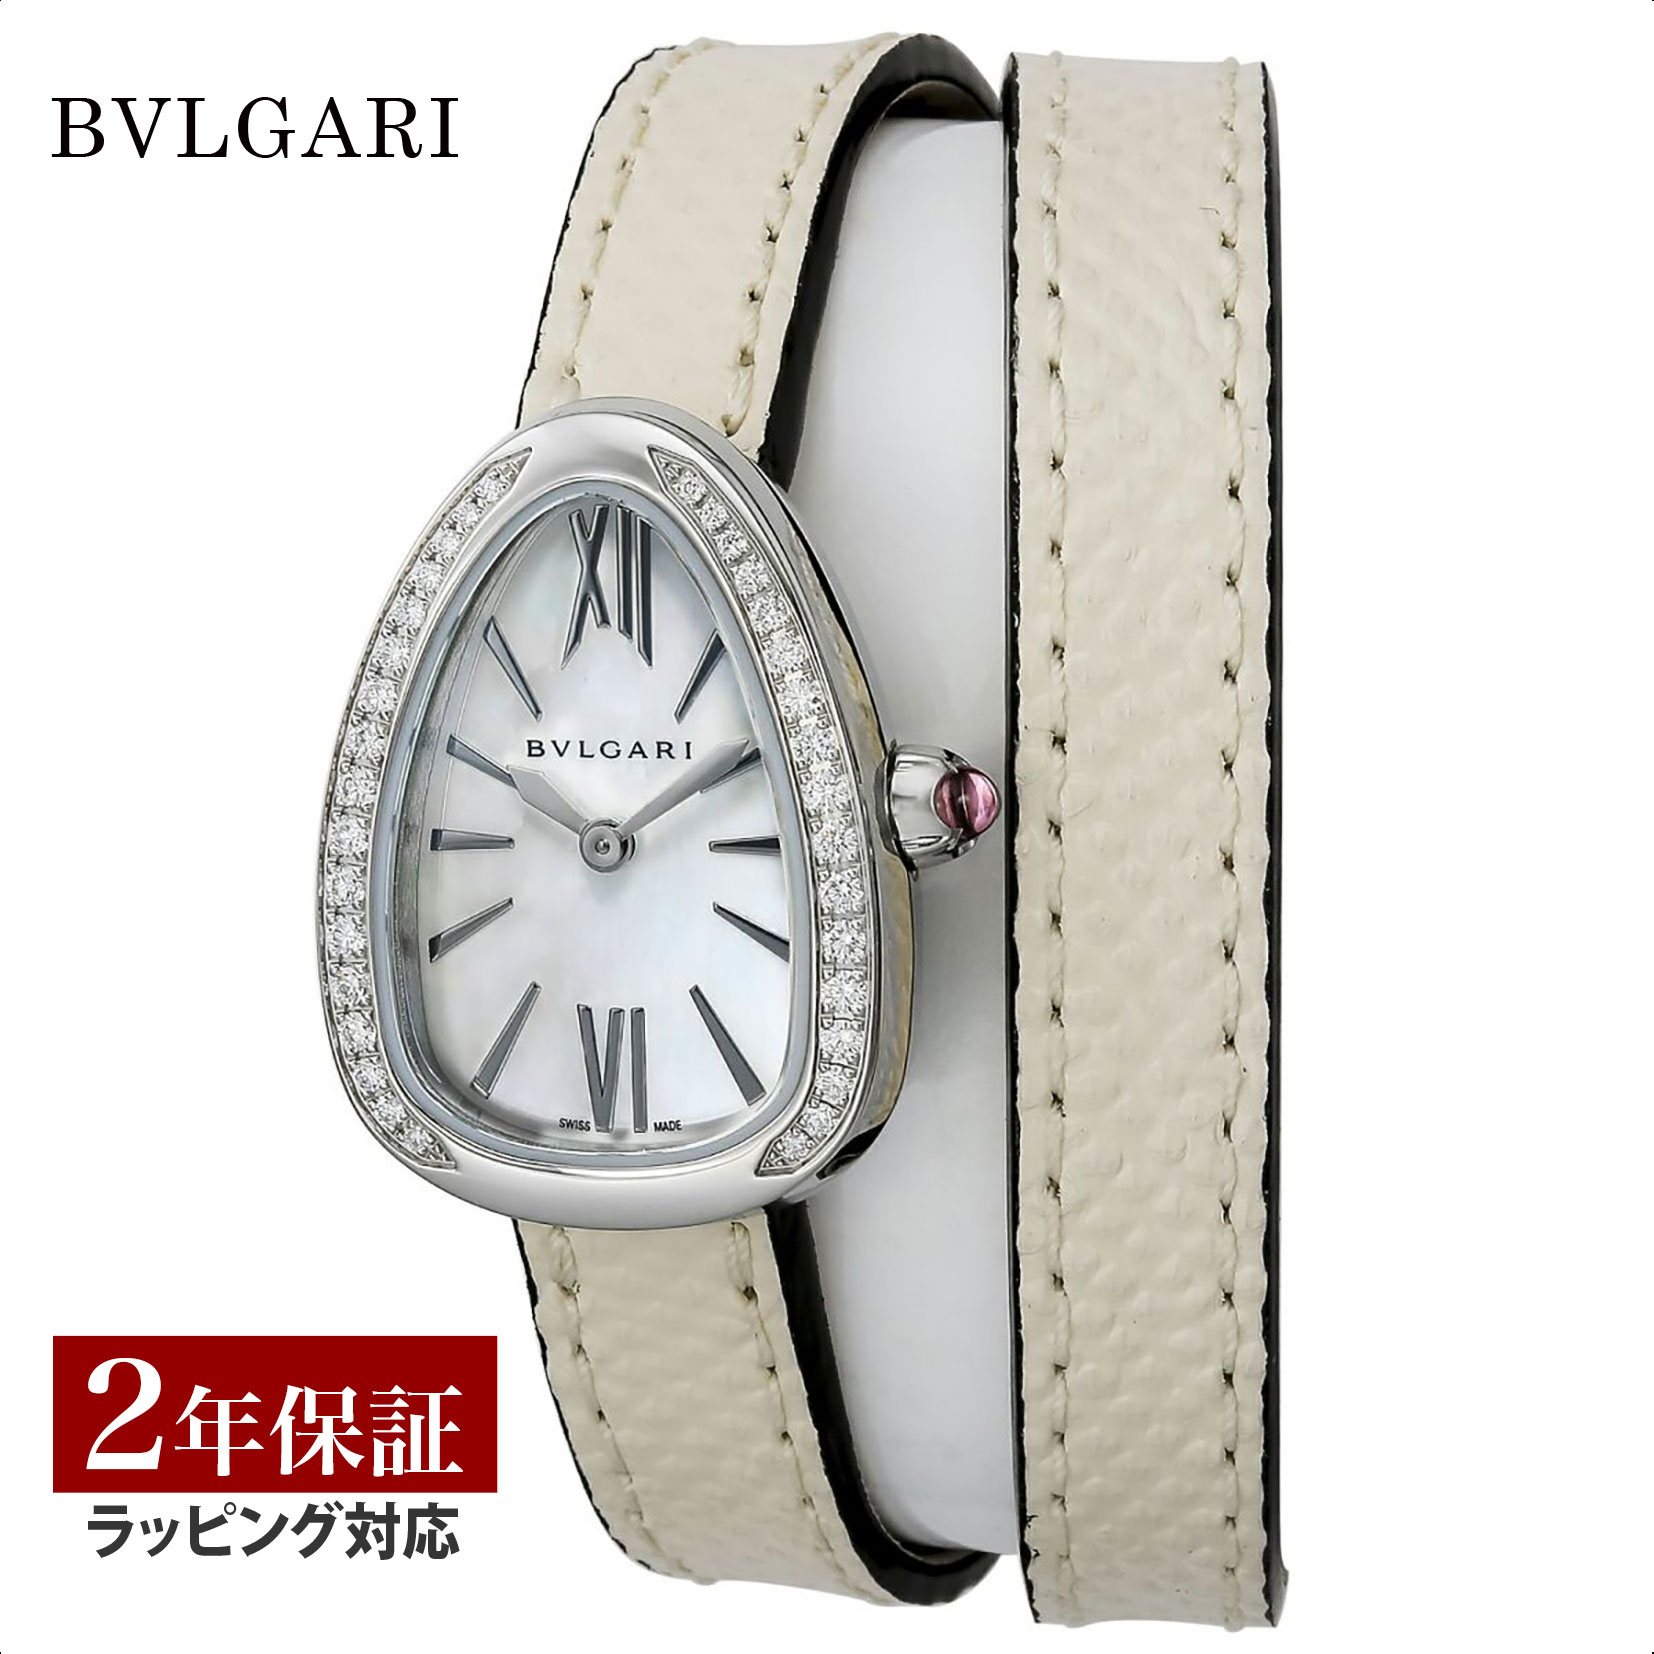 【超目玉】【ローン金利無料】BVLGARI ブルガリ Serpenti セルペンティ クォーツ レディース ホワイトパール SPS27WSDL 時計 腕時計 高級腕時計 ブランド